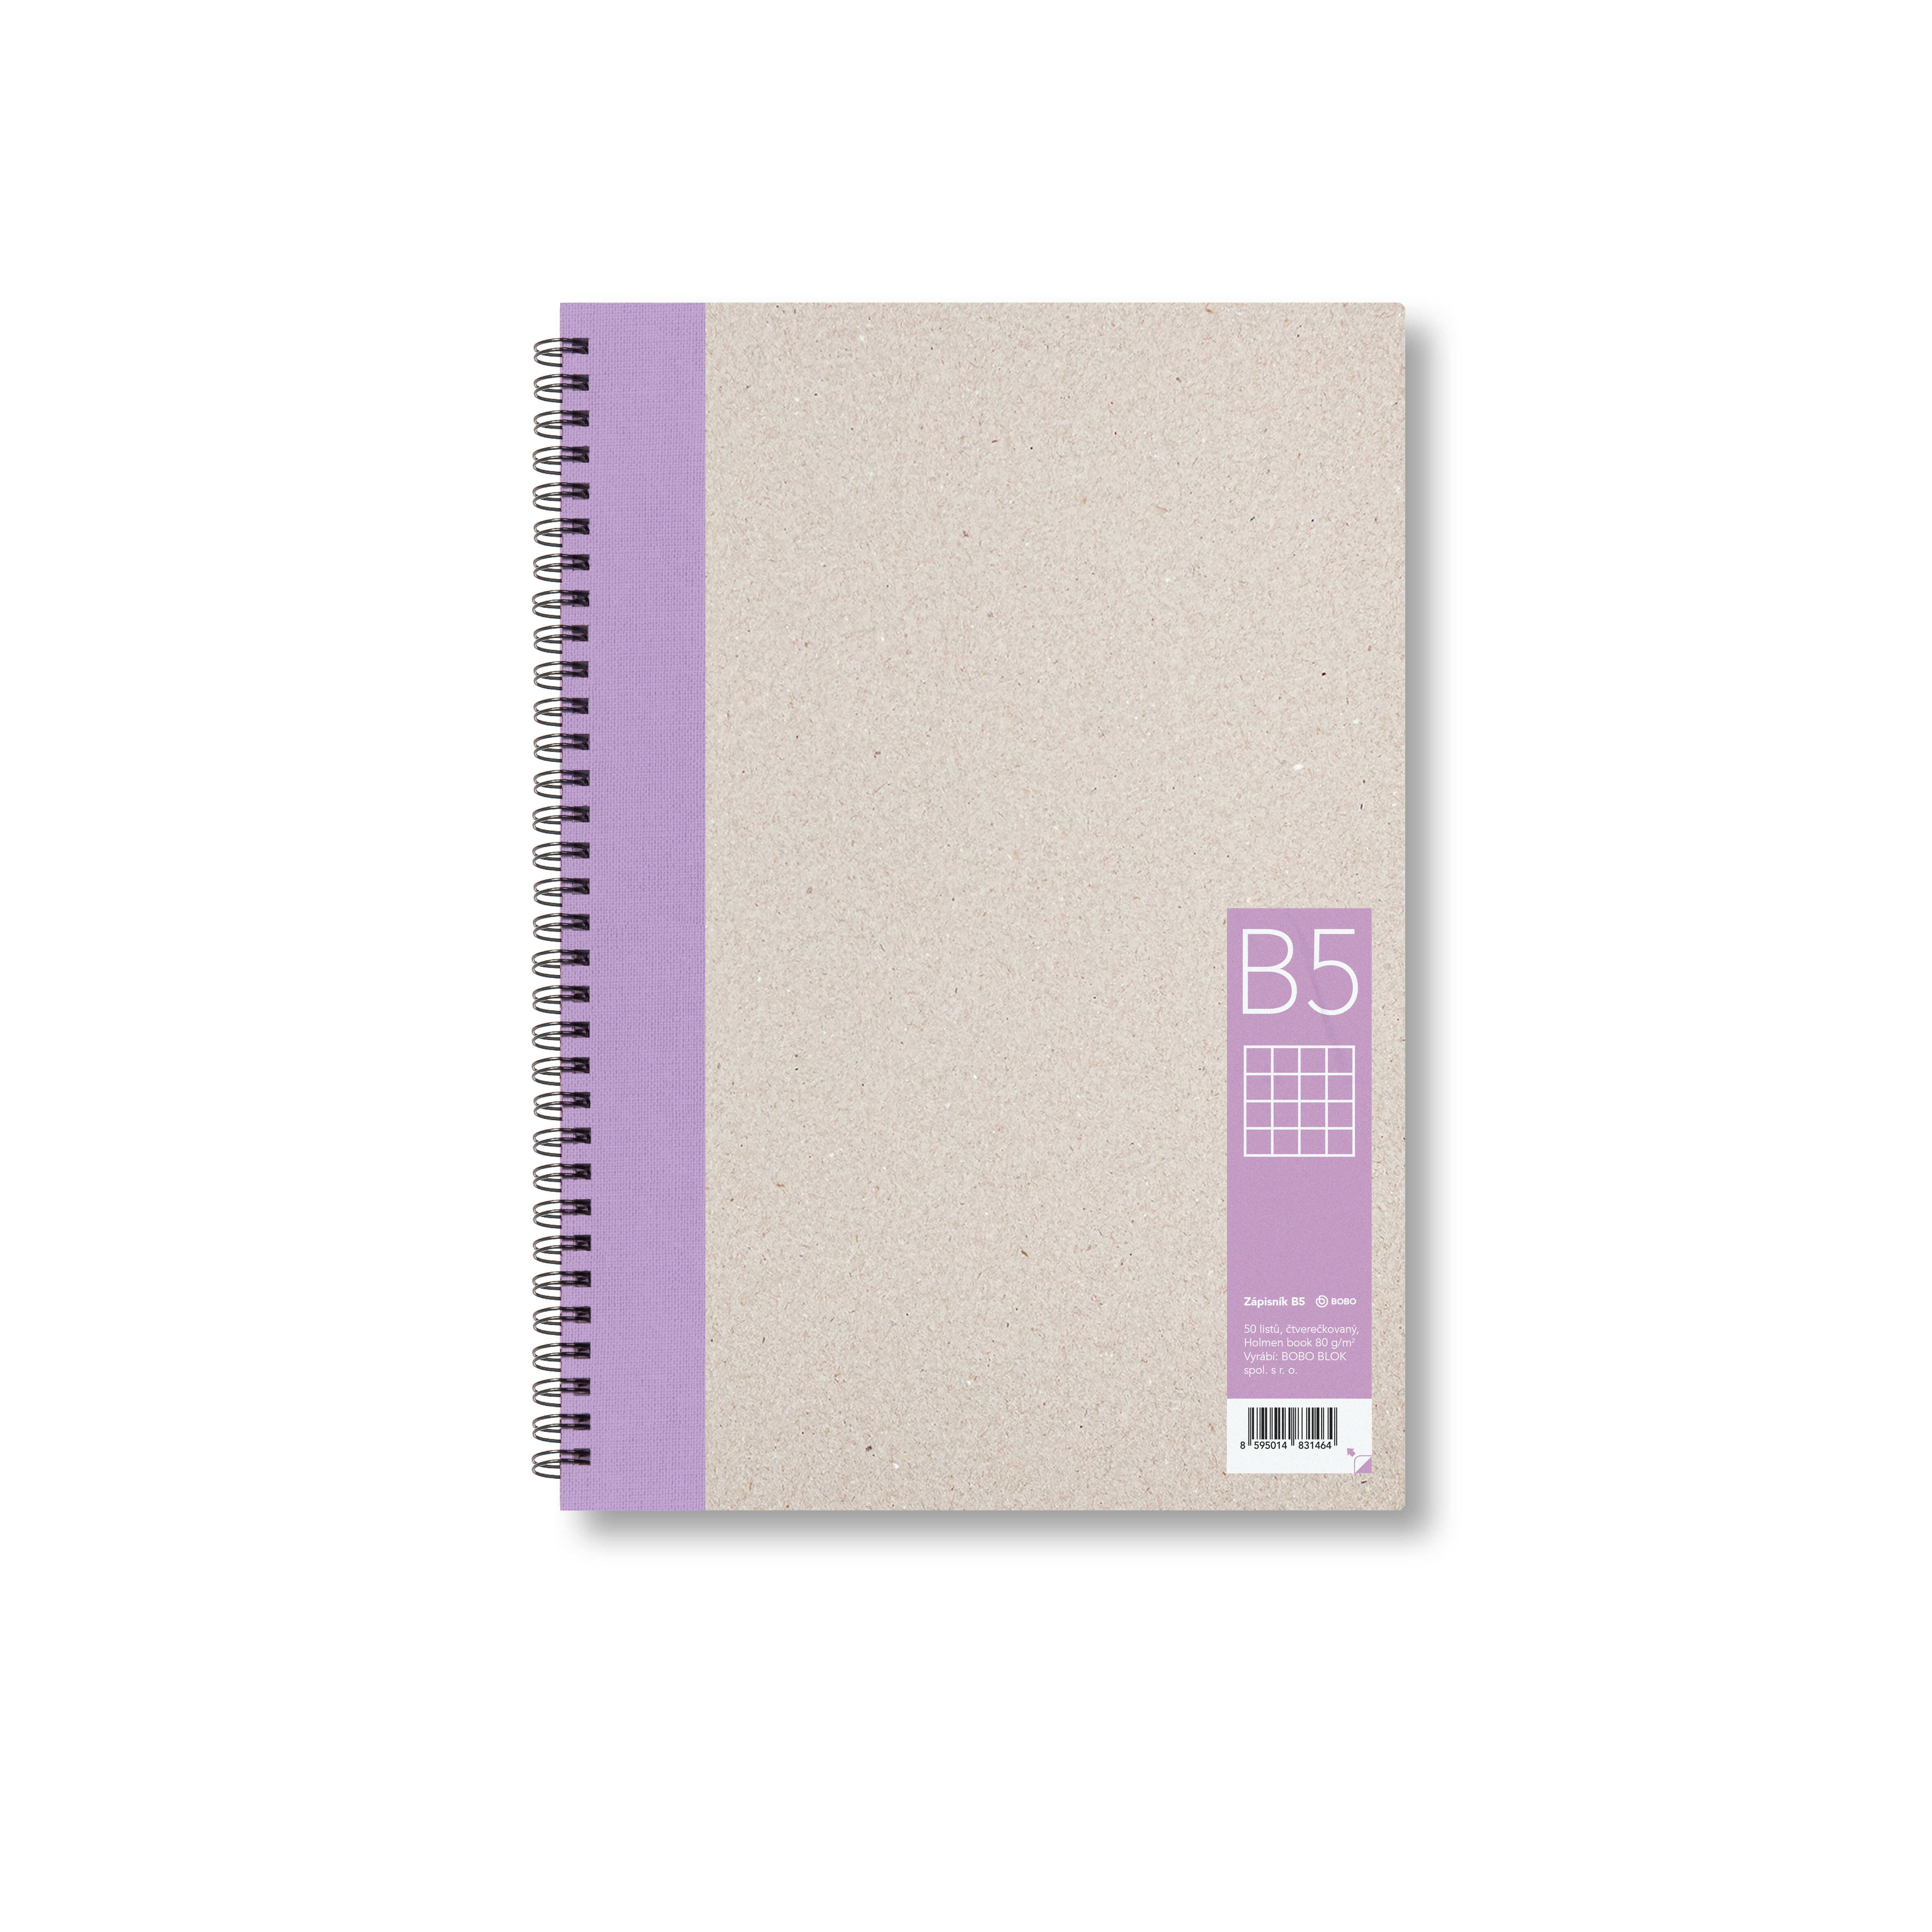 Zápisník Bobo B5, čtverečkovaný, fialový